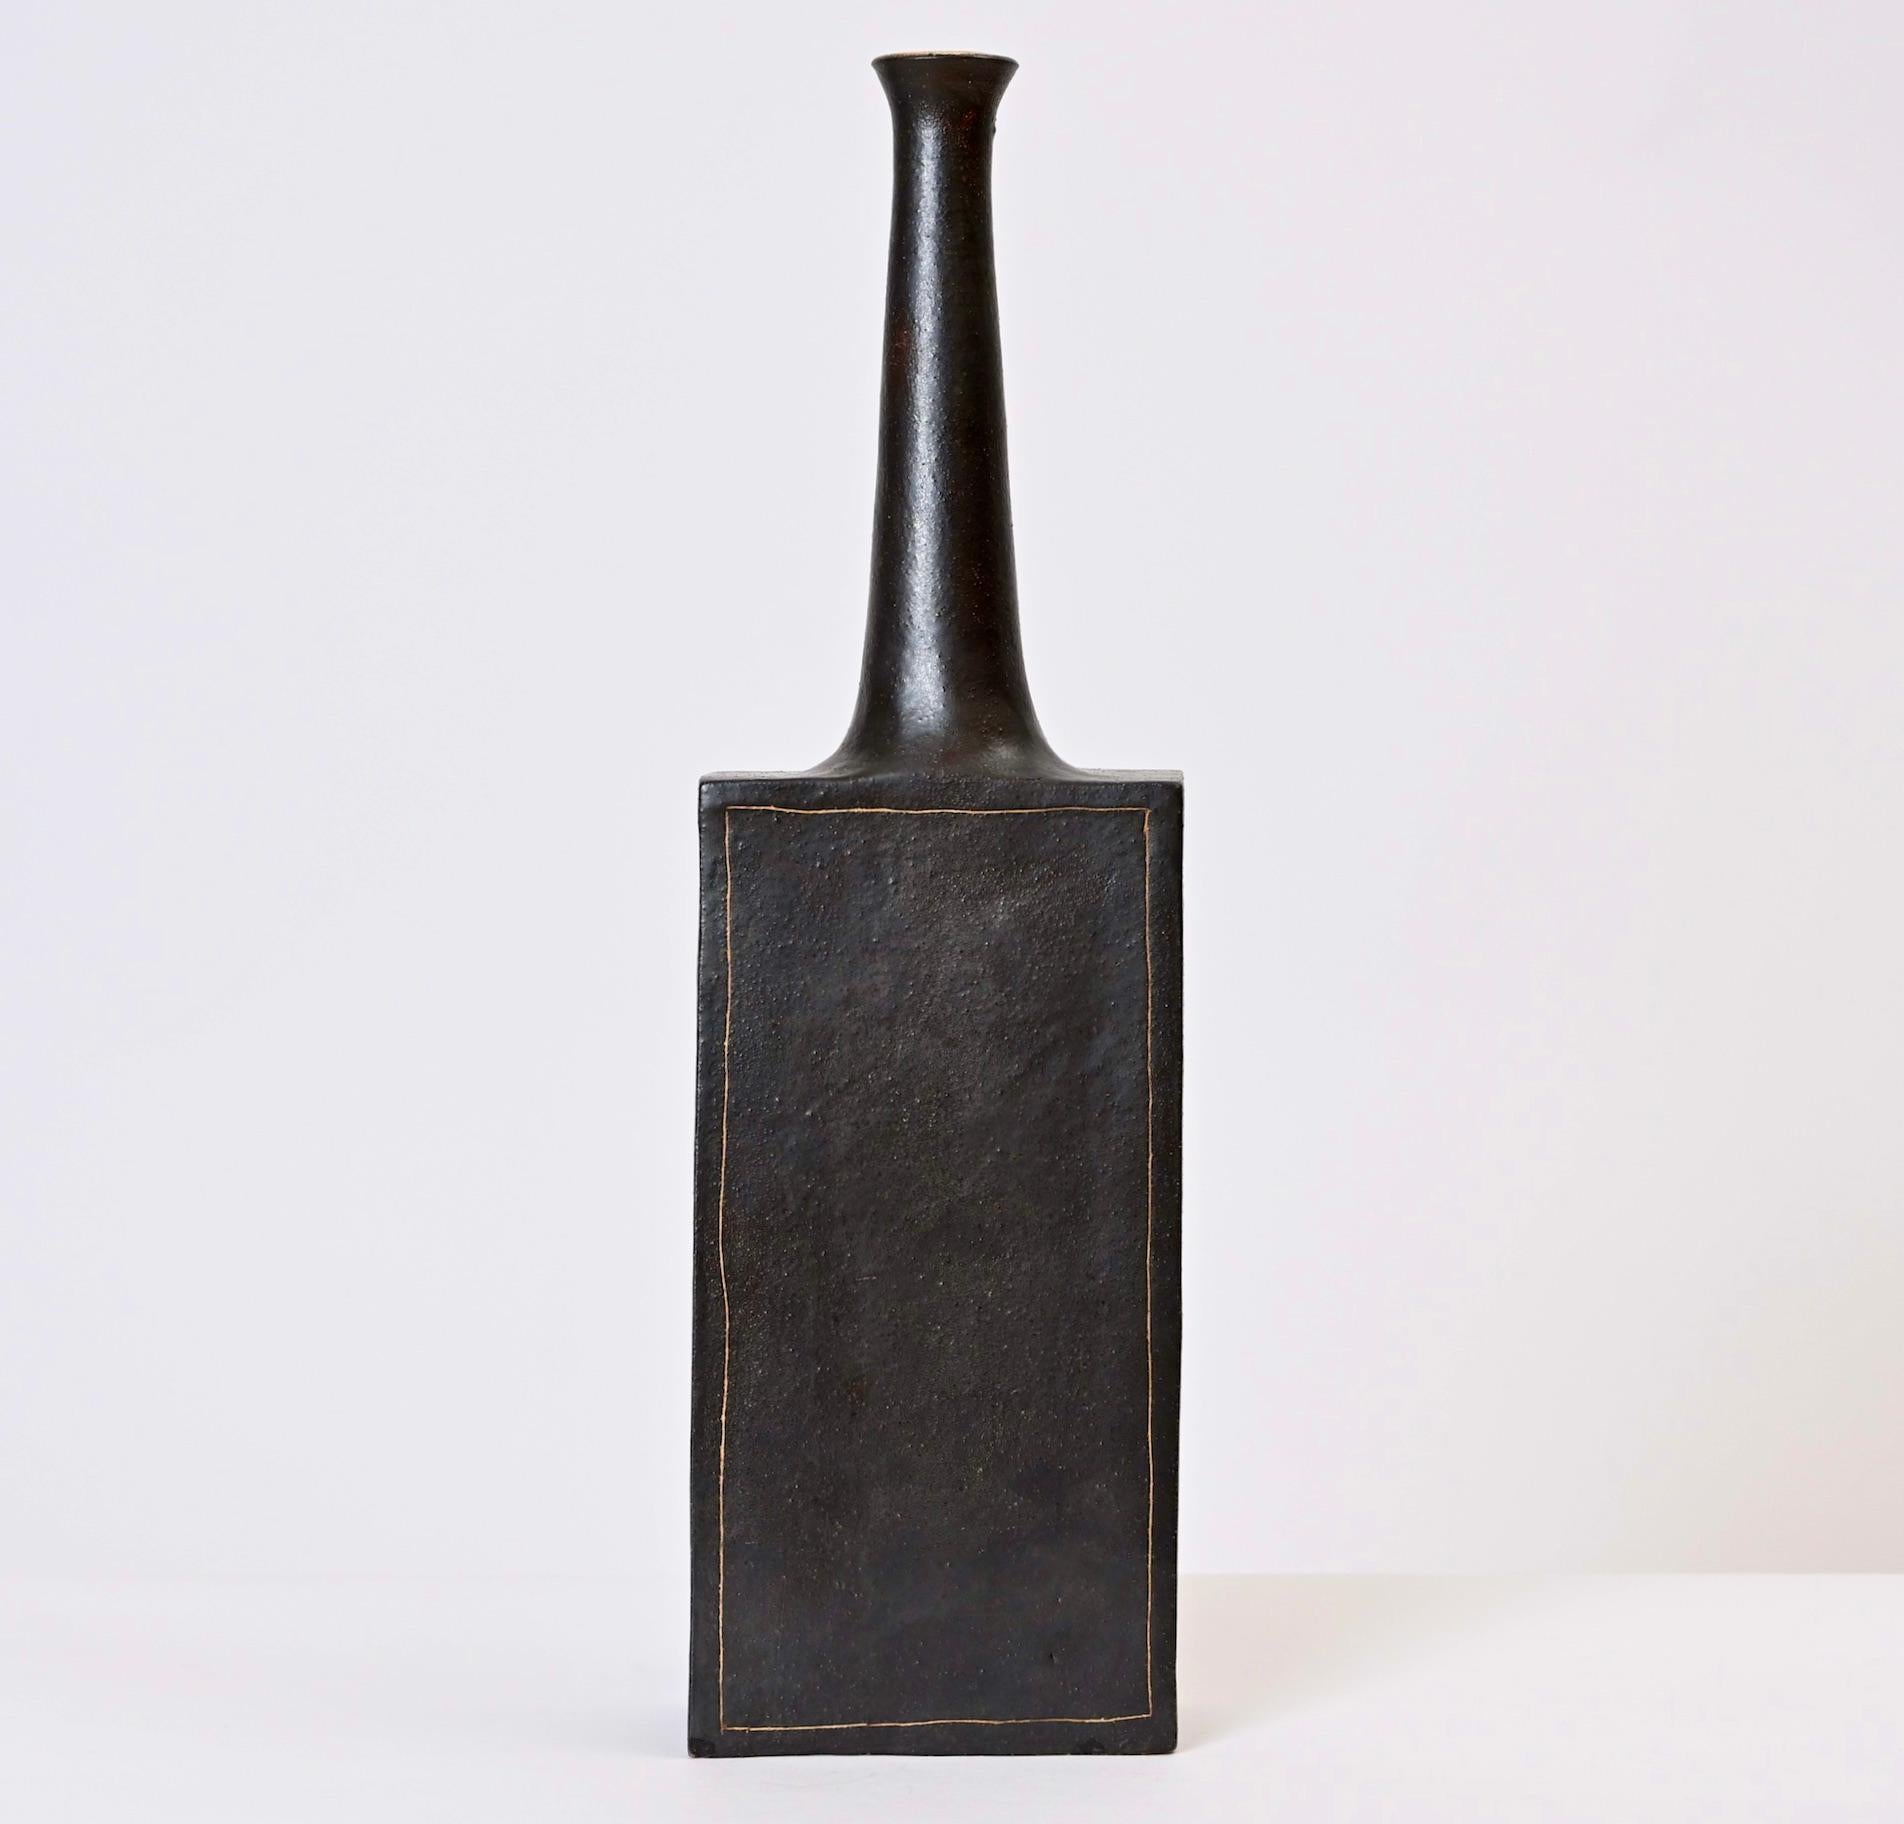 Ce vase en faïence émaillée de Bruno Gambone a été conçu et fabriqué dans le même atelier florentin que celui créé par son célèbre père céramiste, Guido. Produit dans les années 1970, ce vase haut et élancé est de couleur gris foncé et présente par